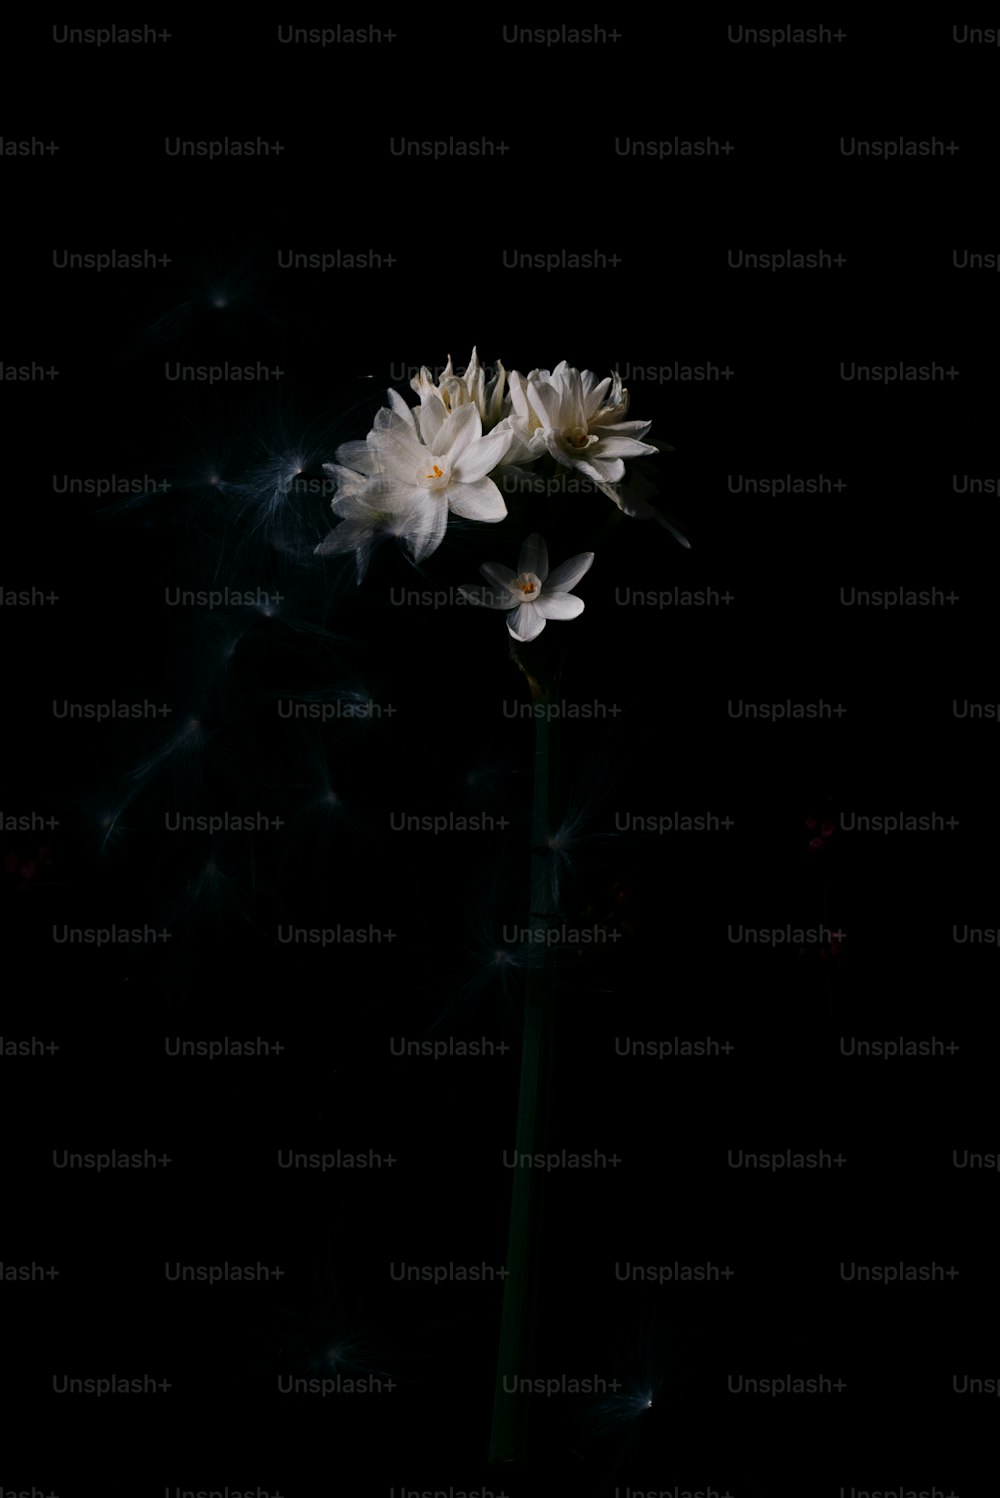 Un singolo fiore bianco in una stanza buia